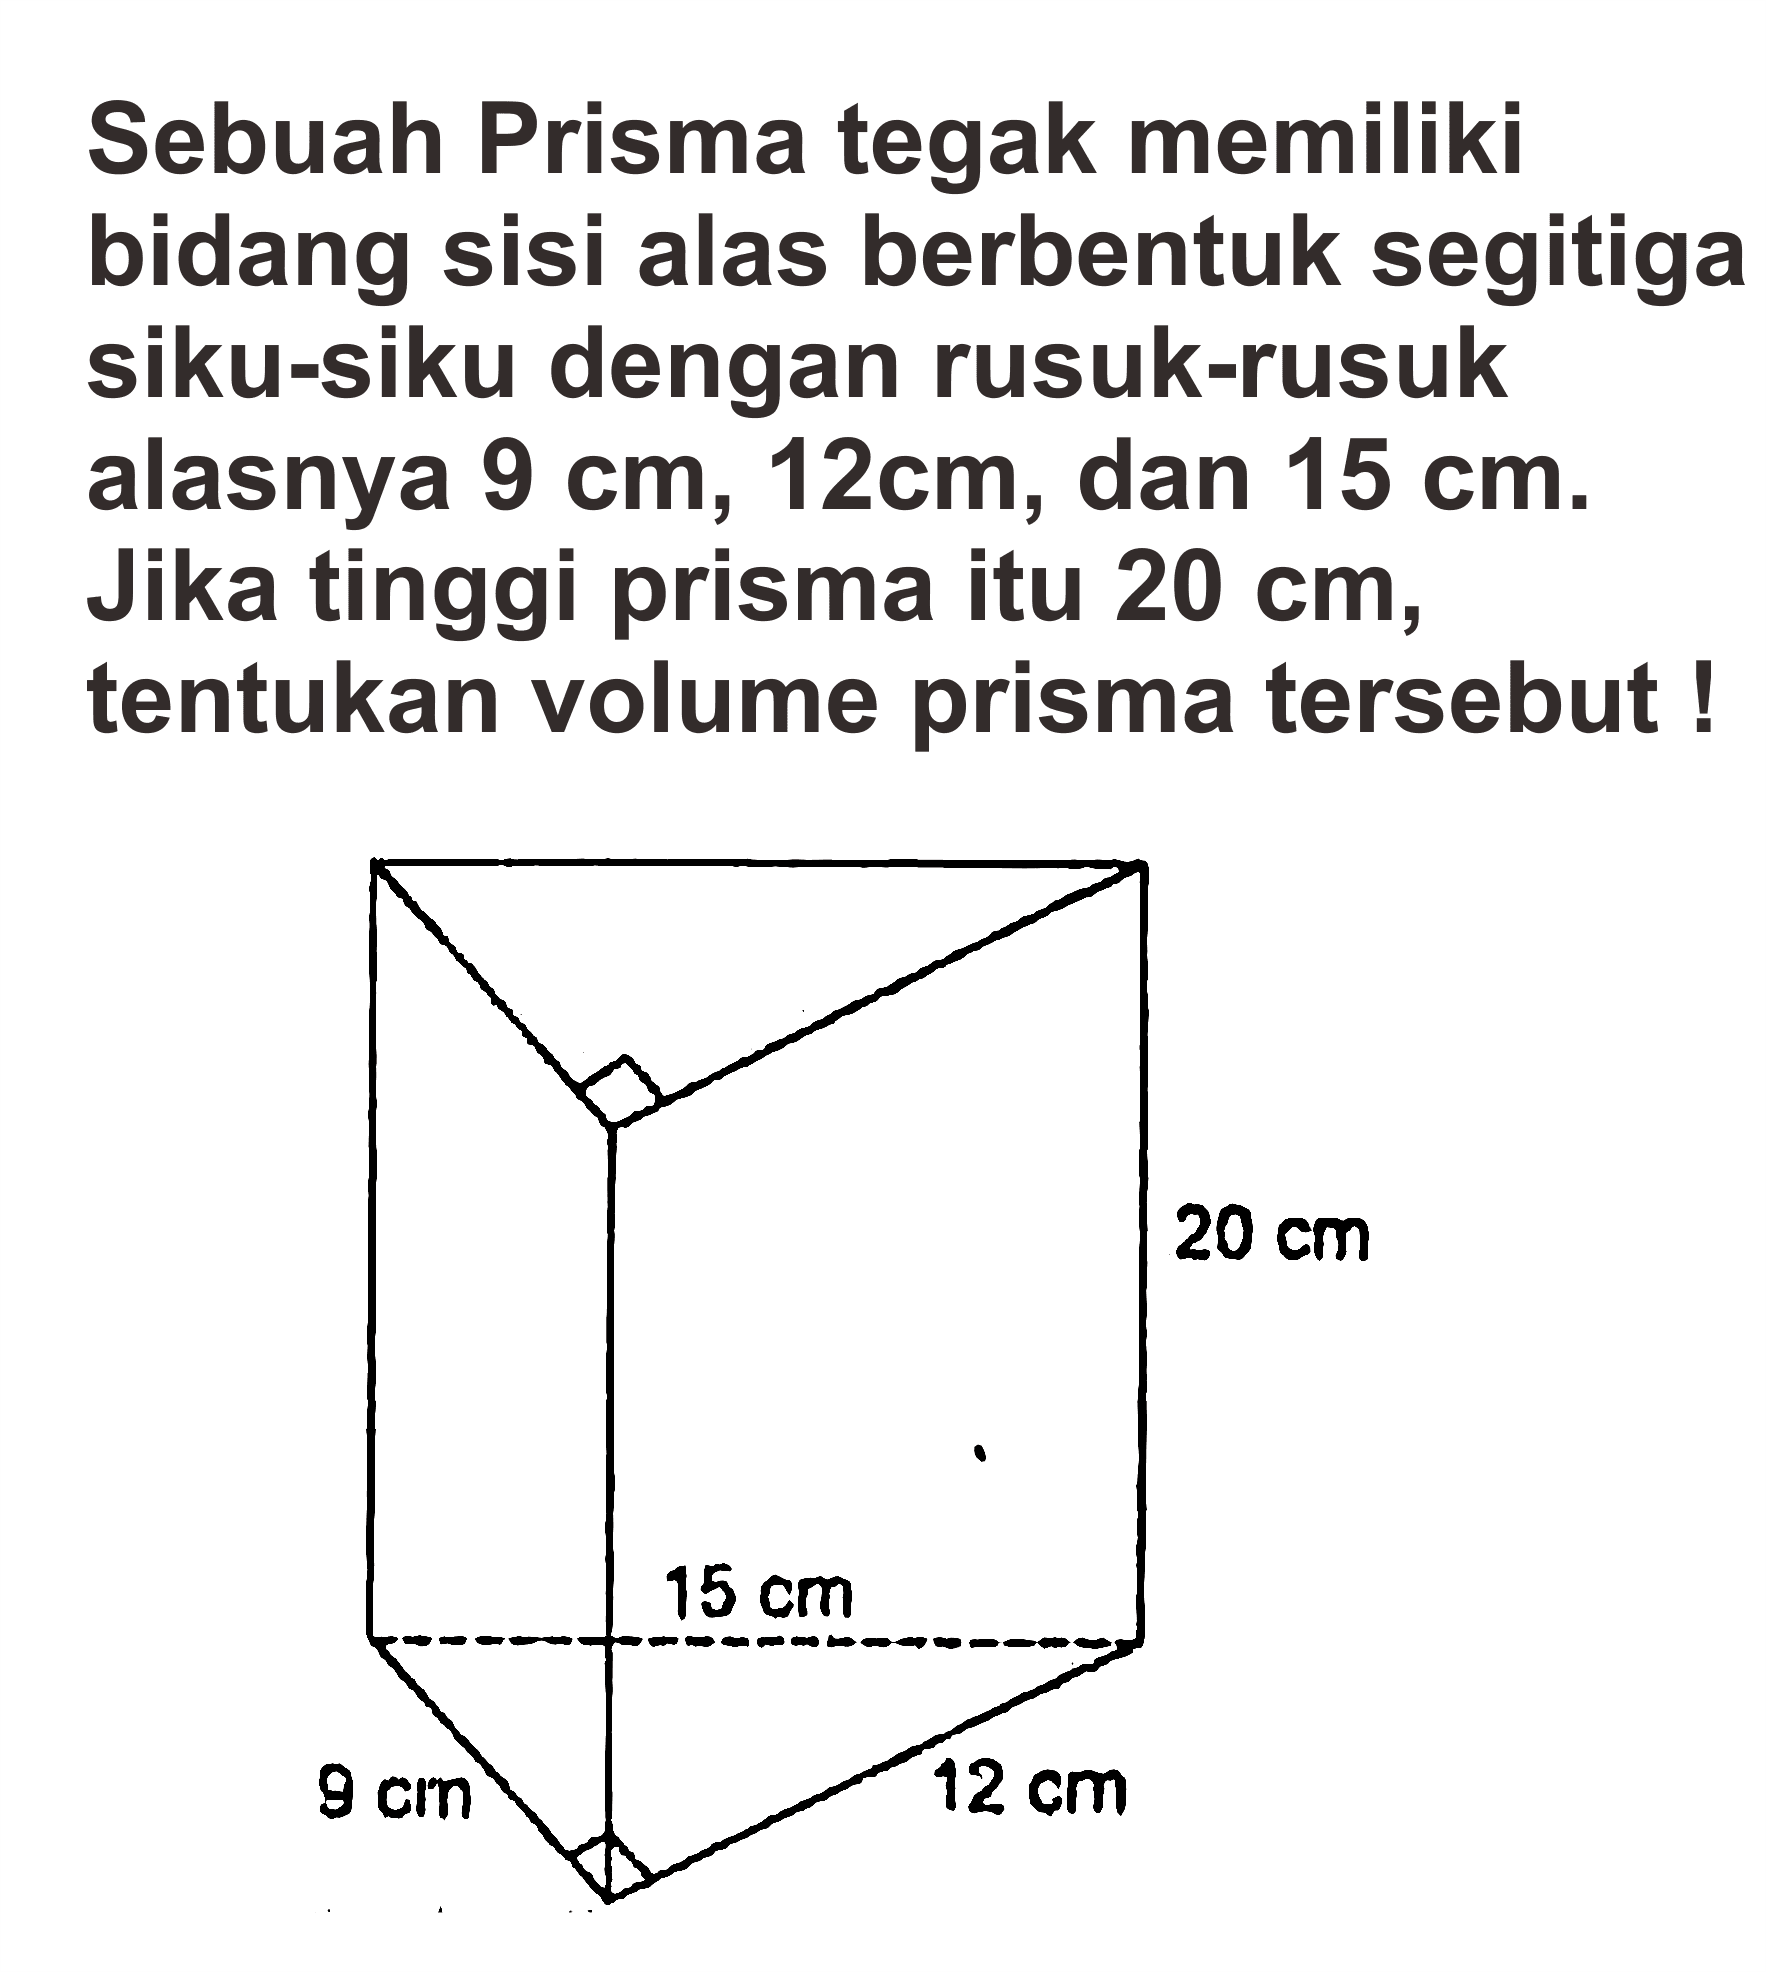 Sebuah Prisma tegak memiliki bidang sisi alas berbentuk segitiga siku-siku dengan rusuk-rusuk alasnya 9 cm, 12cm, dan 15 cm. Jika tinggi prisma itu 20 cm, tentukan volume prisma tersebut !